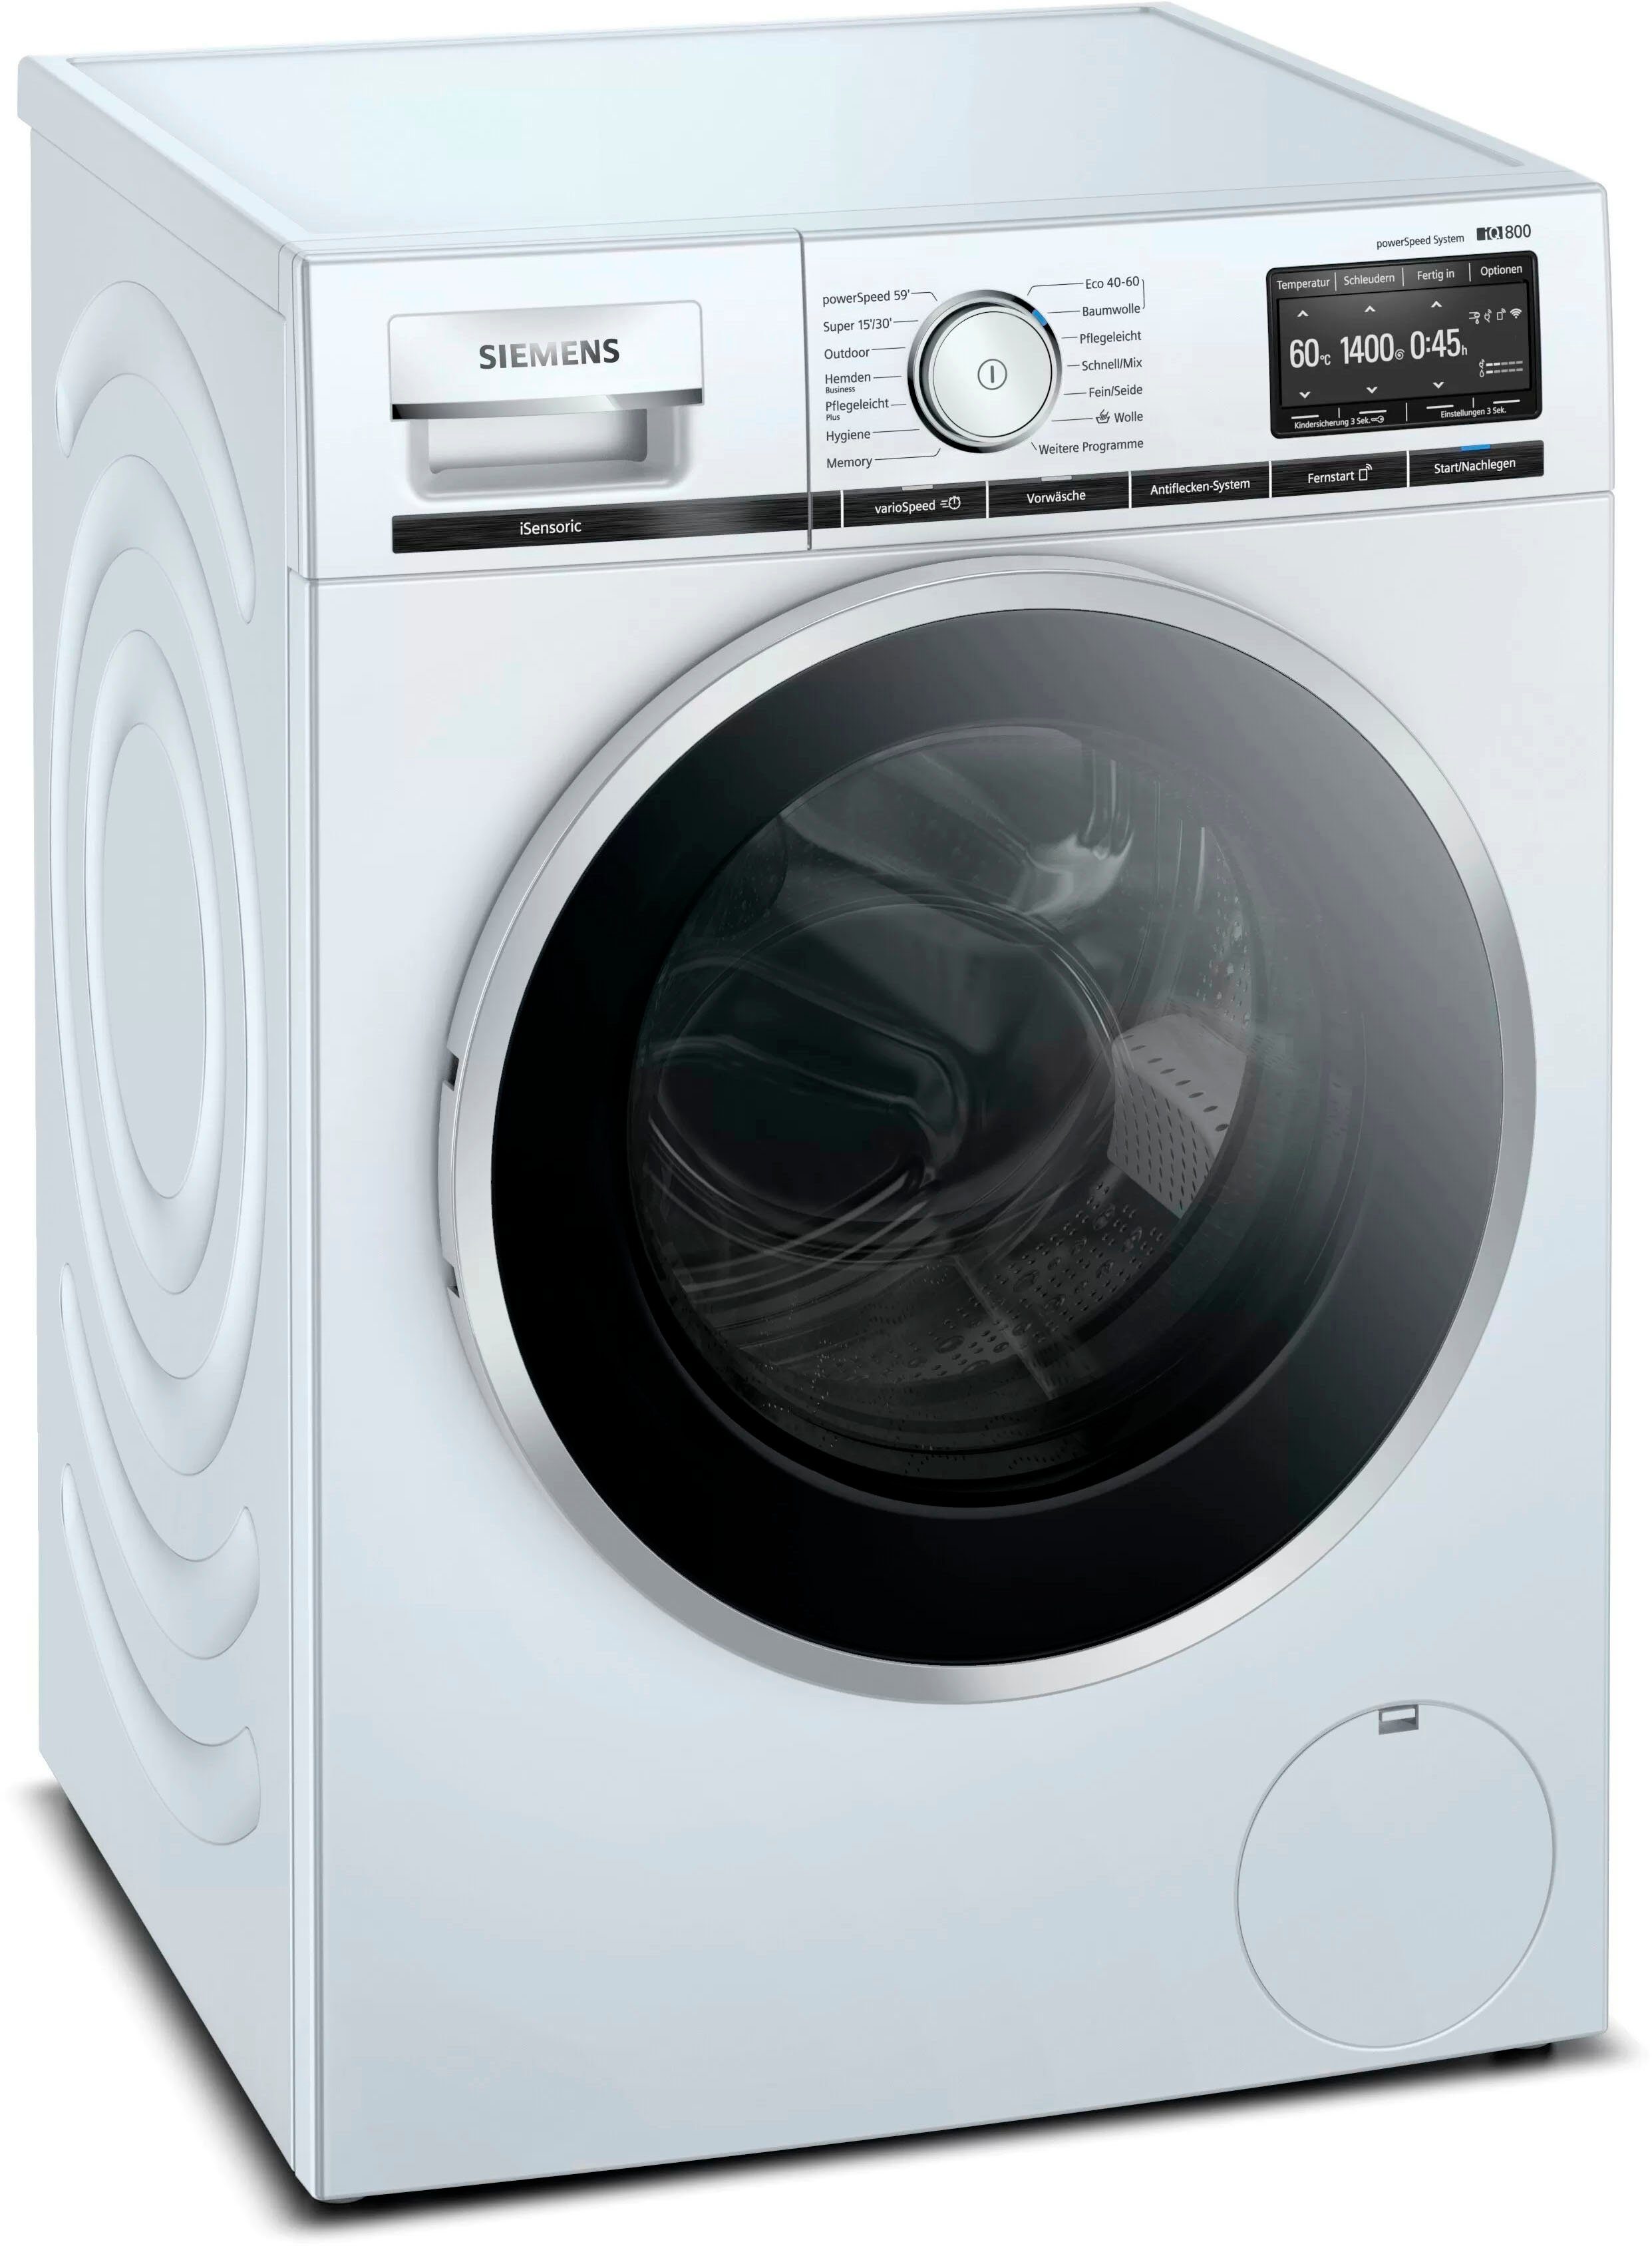 SIEMENS Waschmaschine WM14VG43, 9 kg, 1400 U/min